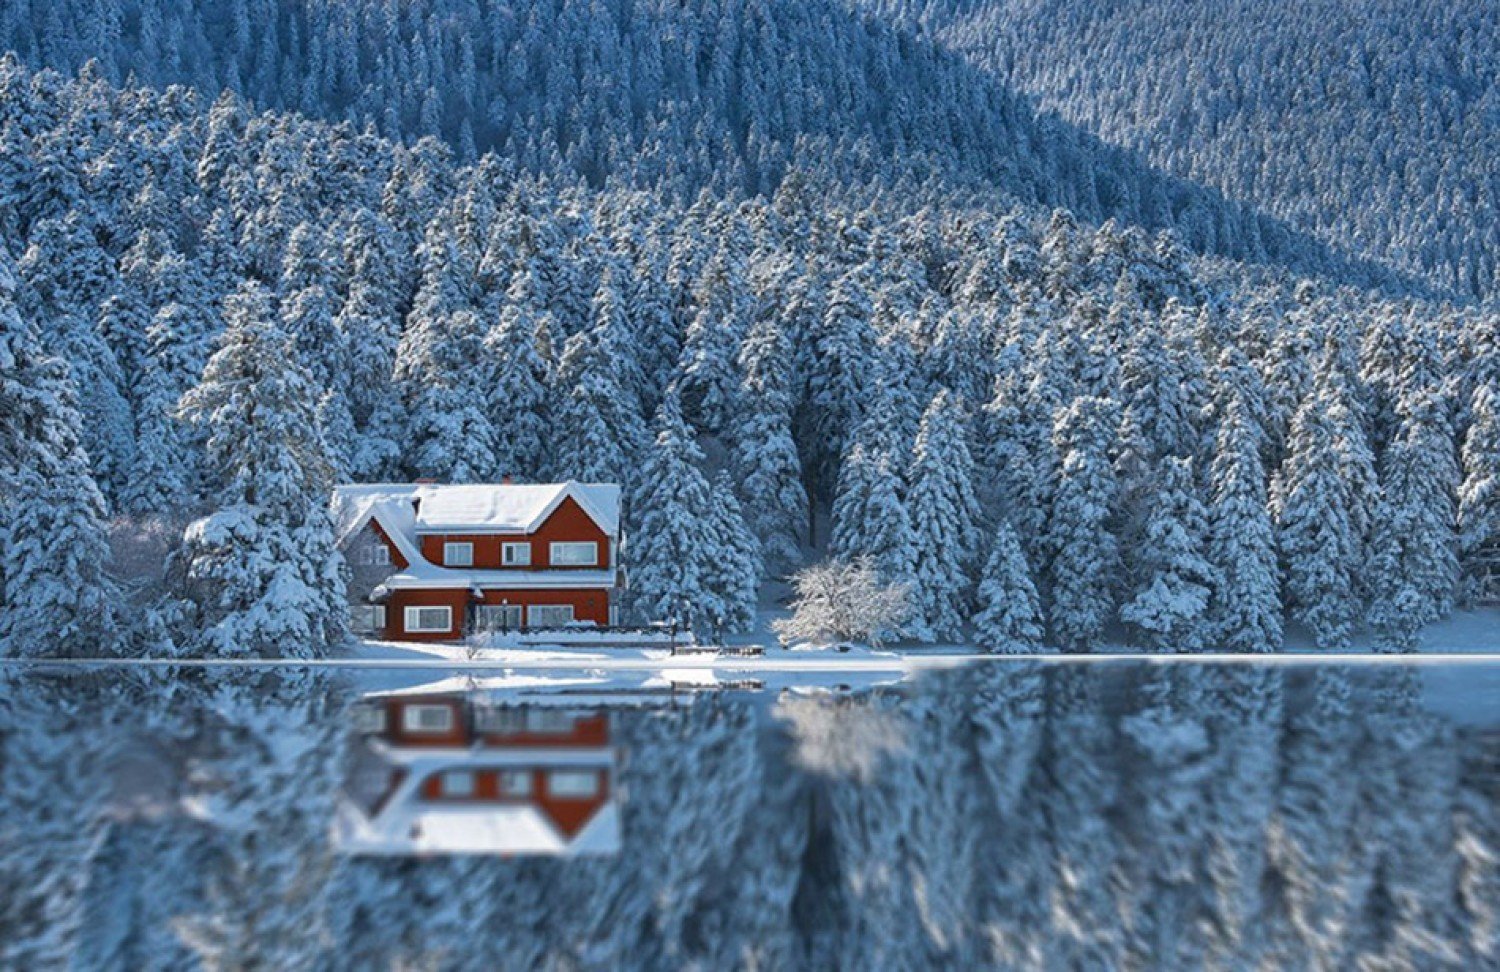 Зима на берегу озера. Уединенный домик в лесу. Дом в лесу. Одинокий домик в зимнем лесу. Домик в лесу у озера зимой.